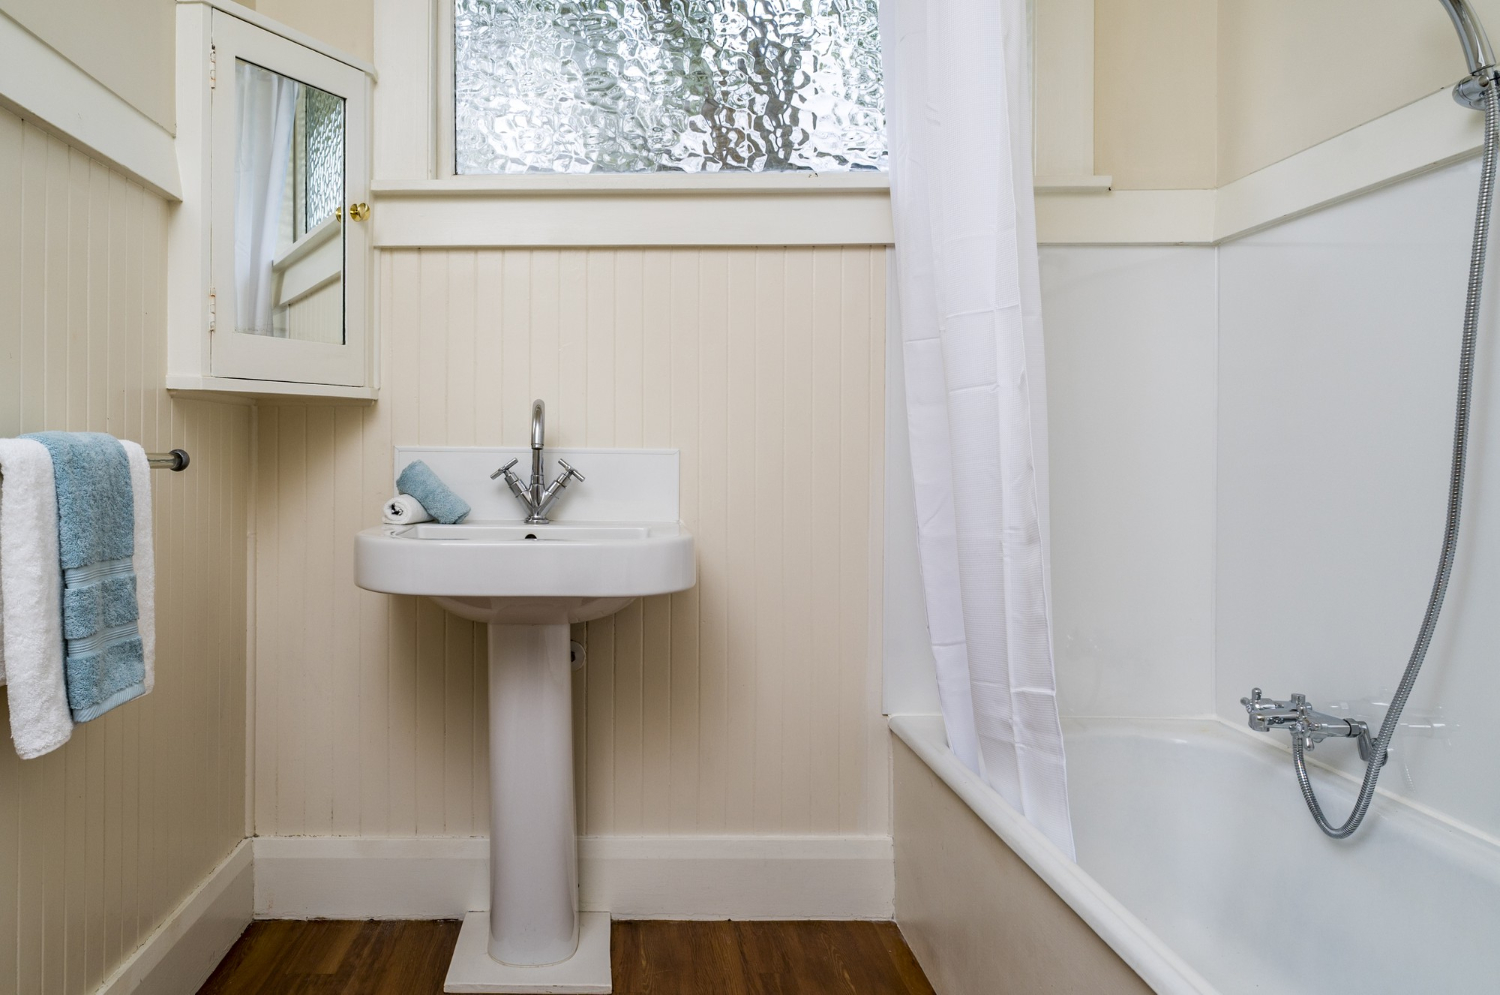 Manfaatkan detail kecil untuk mempercantik desain kamar mandi sederhana.